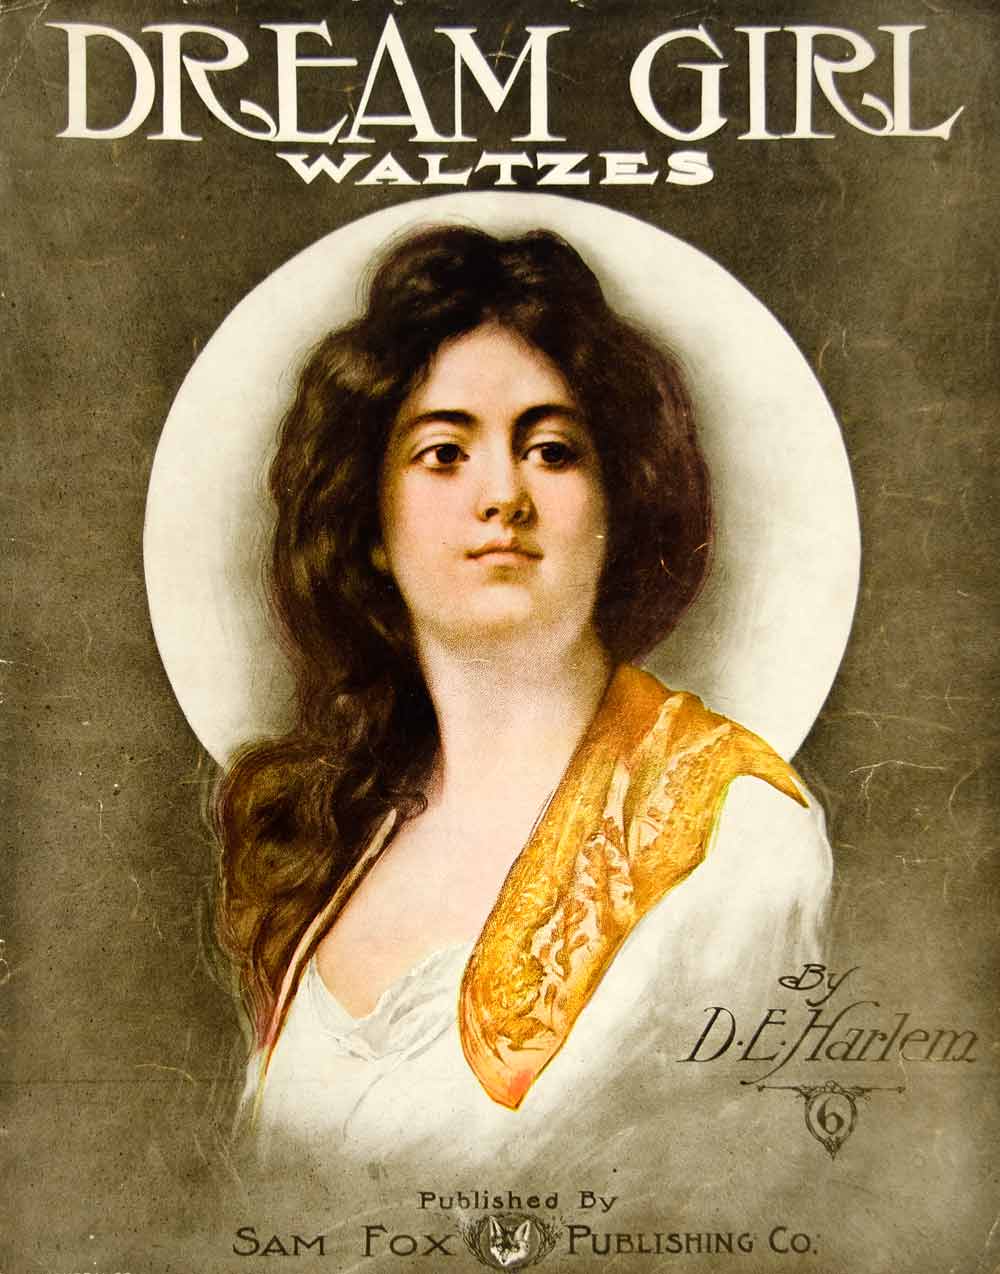 1906 Sheet Music Dream Girl Waltzes D. E. Harlem Sam Fox Publishing ZSM5